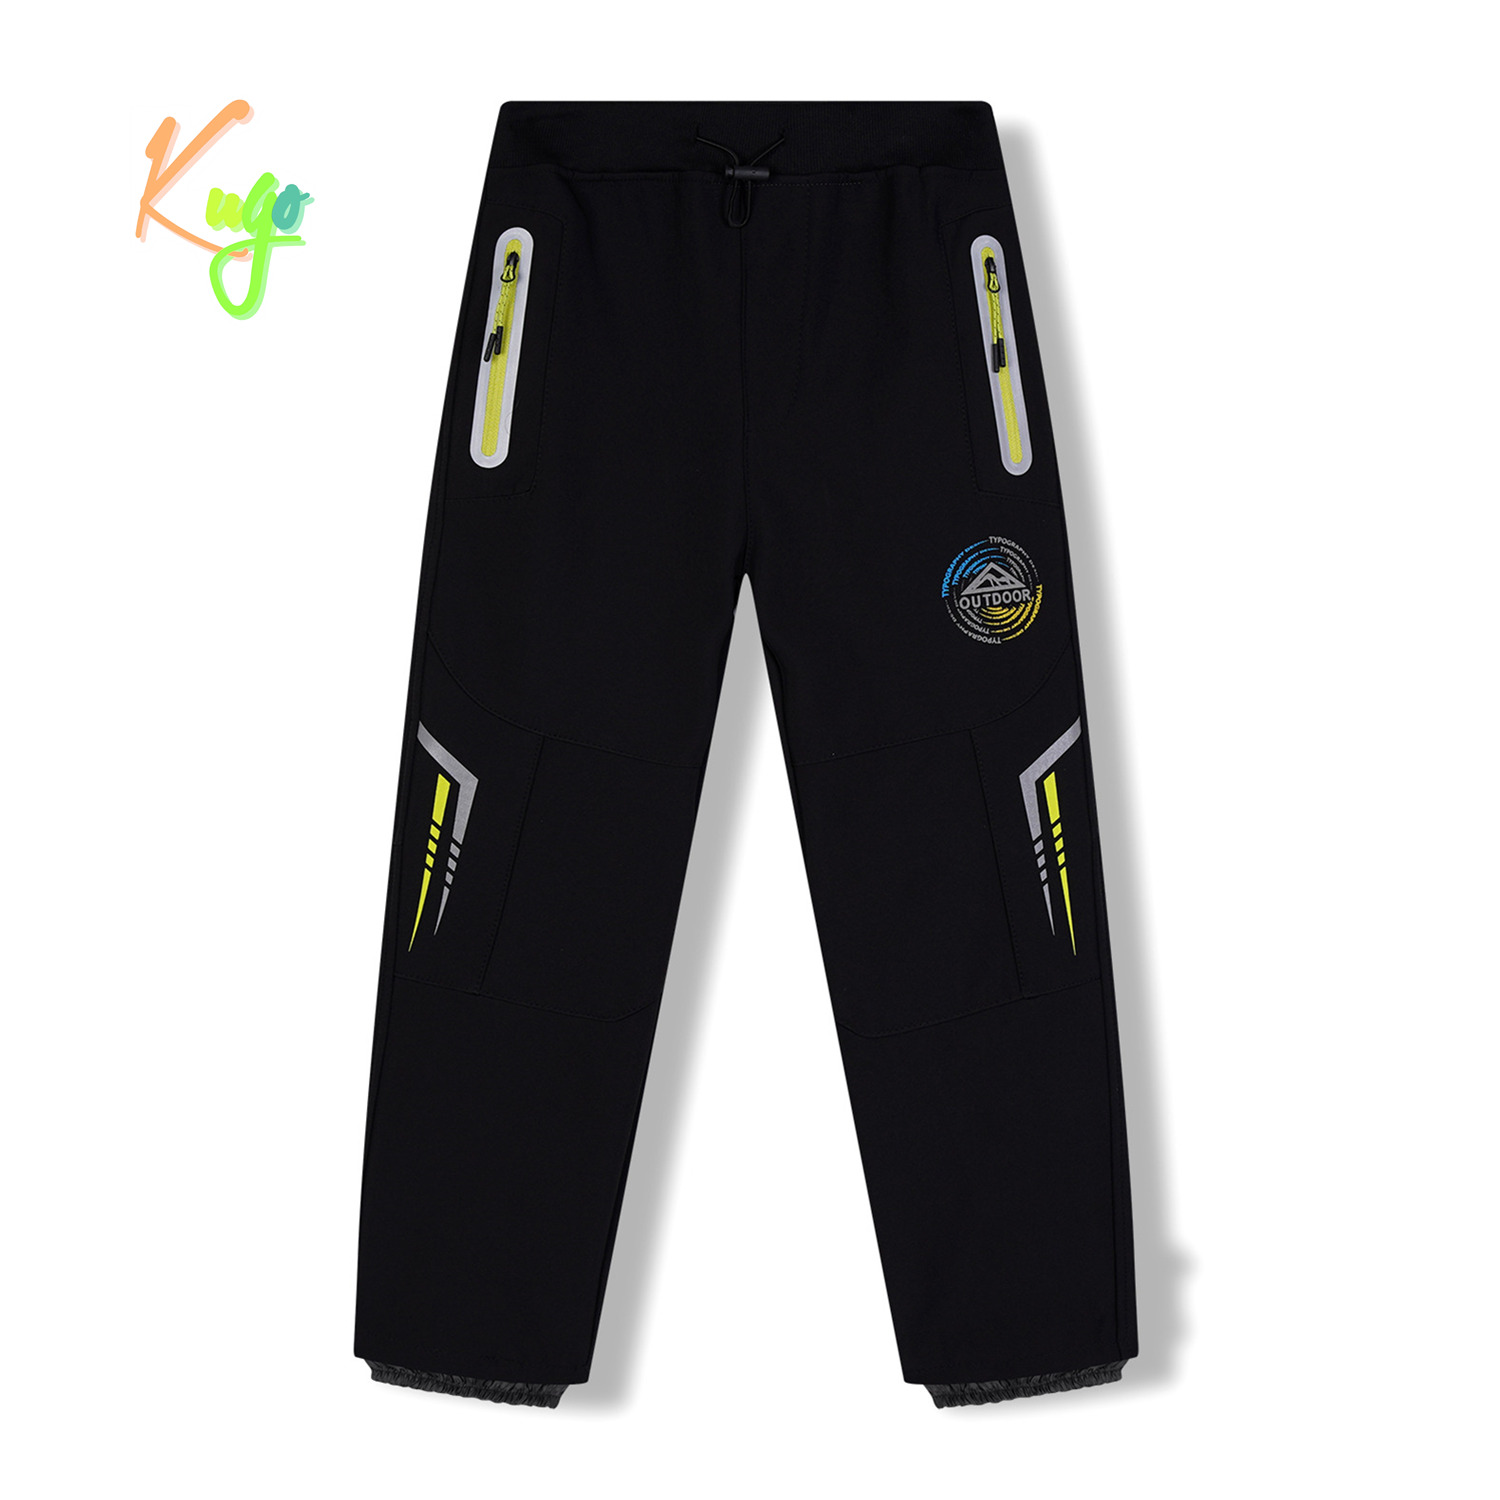 Chlapecké softshellové kalhoty, zateplené - KUGO HK5621, černá / signální zipy Barva: Černá, Velikost: 140